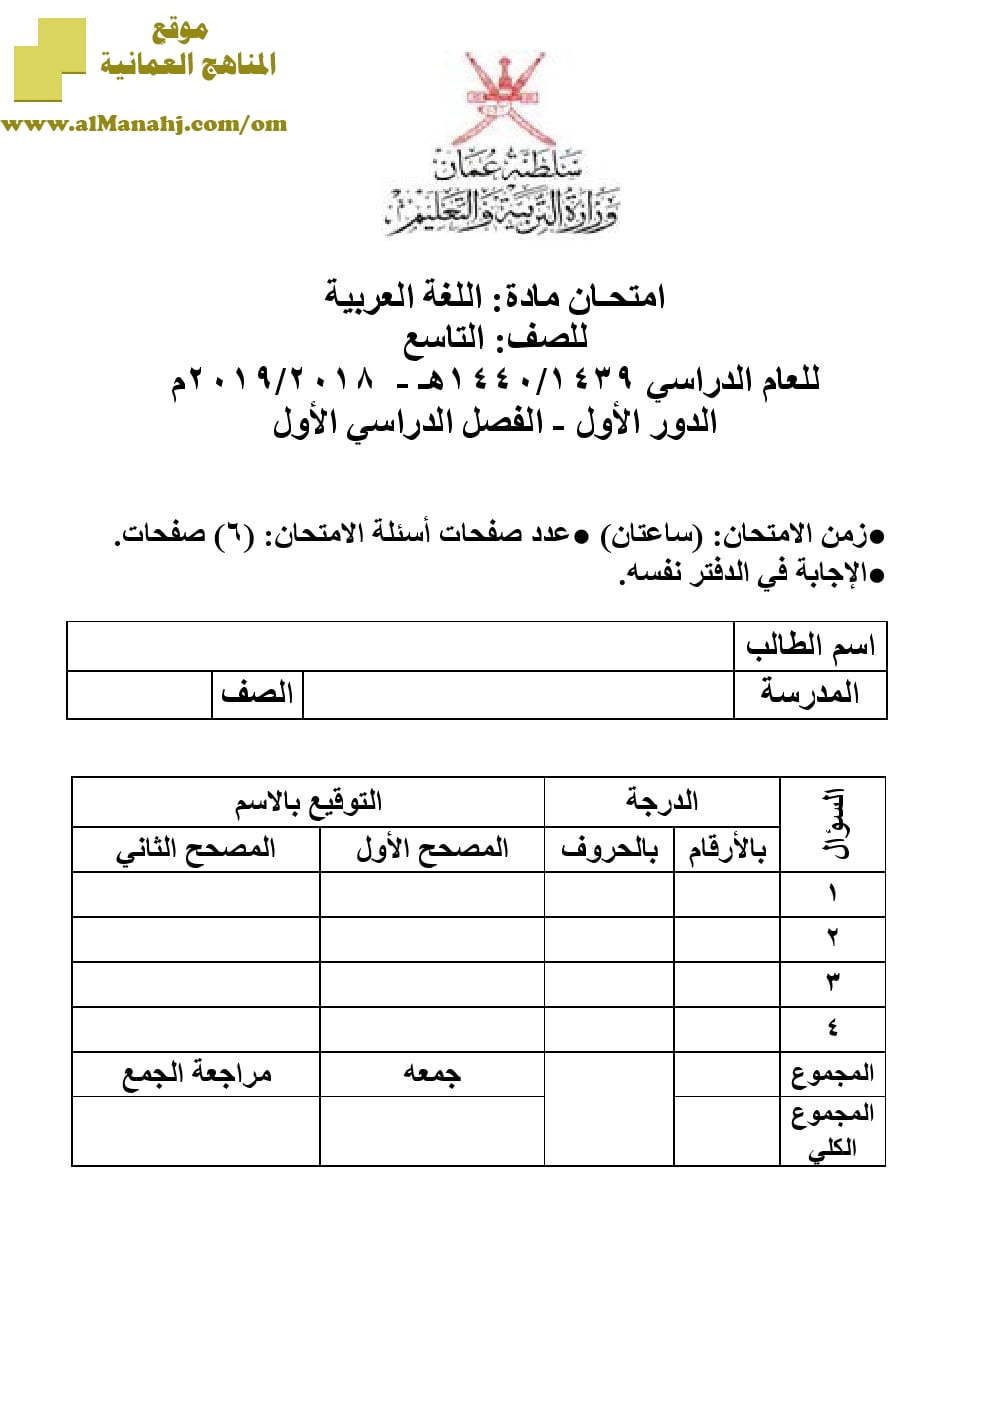 أسئلة وإجابة الامتحان الرسمي الدور الأول والثاني (لغة عربية) التاسع